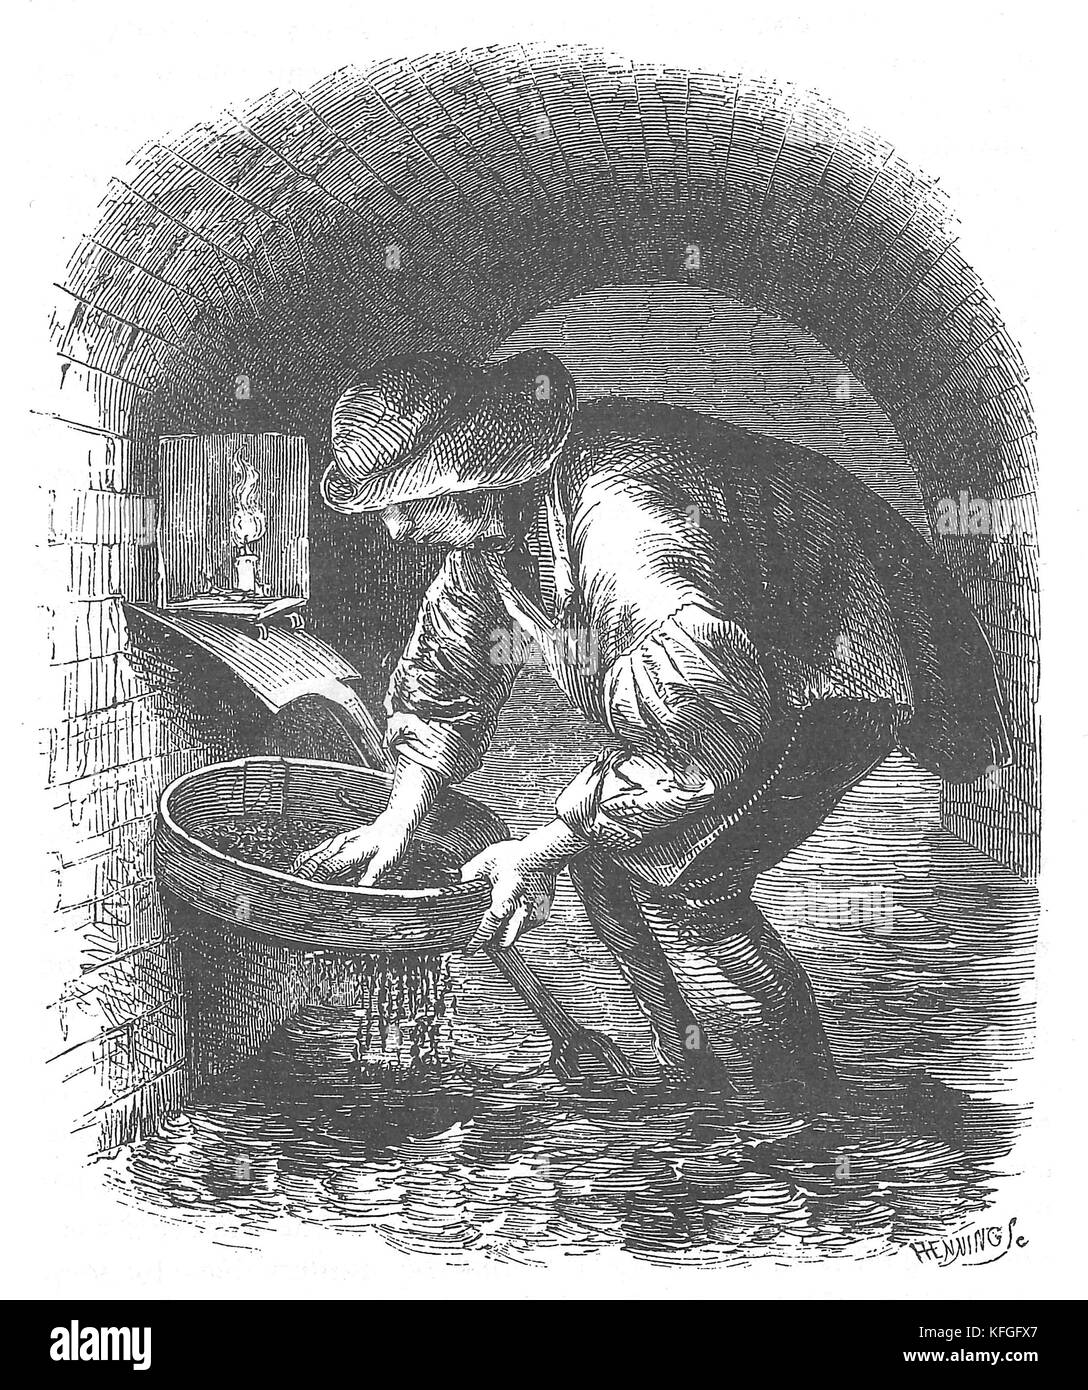 Chasseur d'égout ou casher, une illustration de 1851 un égout-hunter ou 'tosher.' qui récupère dans les égouts, particulièrement à Londres pendant l'ère victorienne Banque D'Images